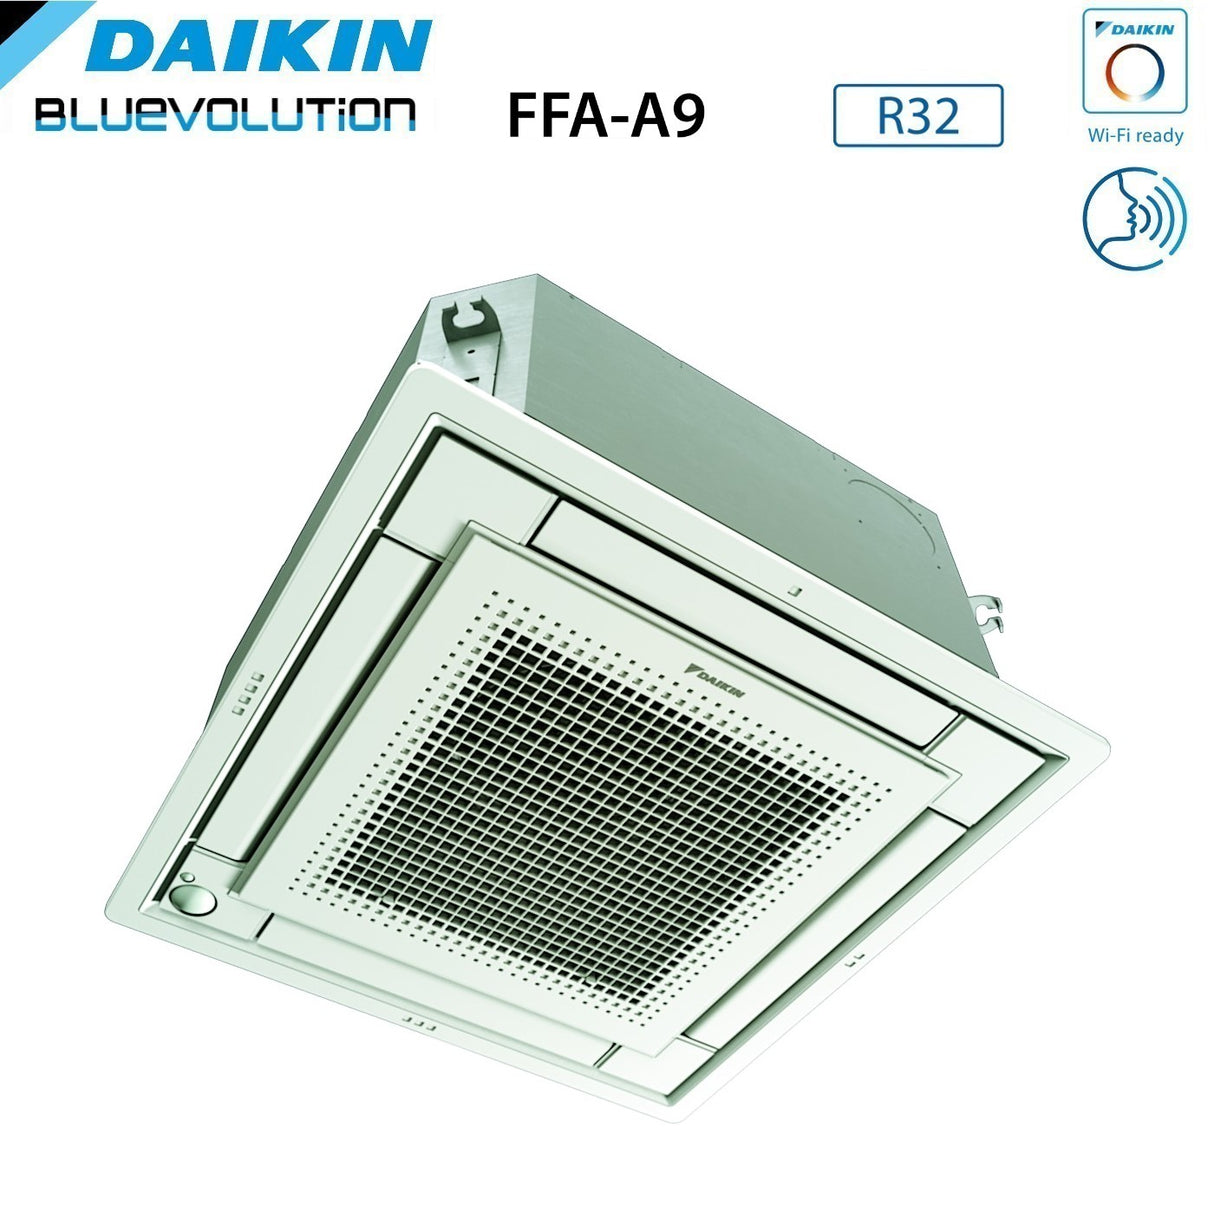 immagine-6-daikin-climatizzatore-condizionatore-daikin-a-cassetta-fully-flat-9000-btu-ffa25a9-r-32-wi-fi-optional-con-griglia-inclusa-classe-aa-garanzia-italiana